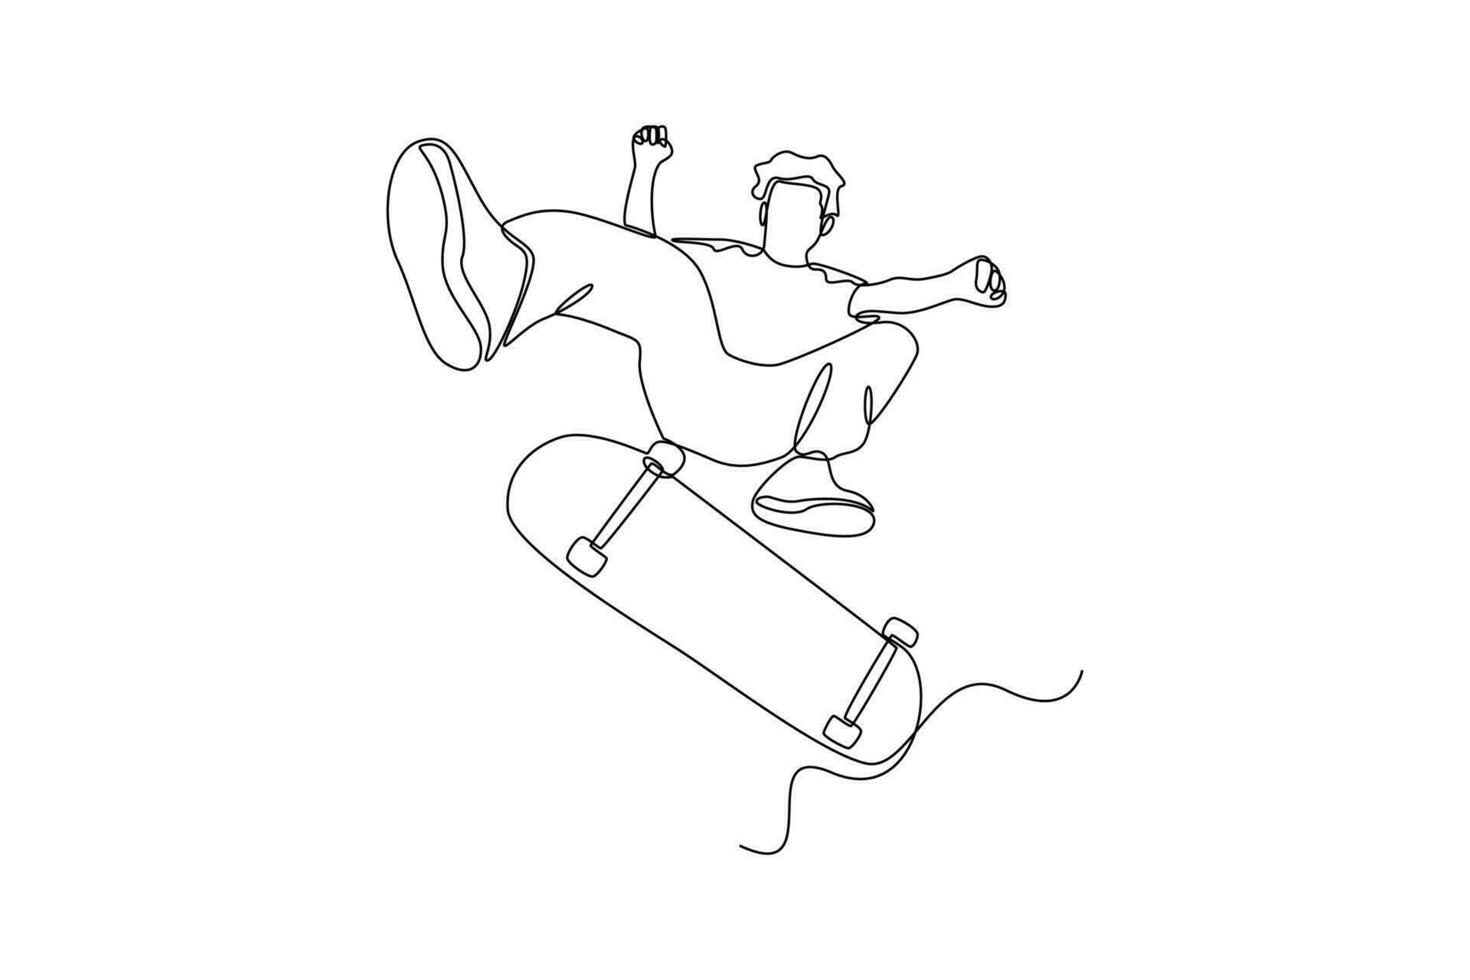 doorlopend een lijn tekening jeugd sport- concept. single lijn trek ontwerp vector grafisch illustratie.